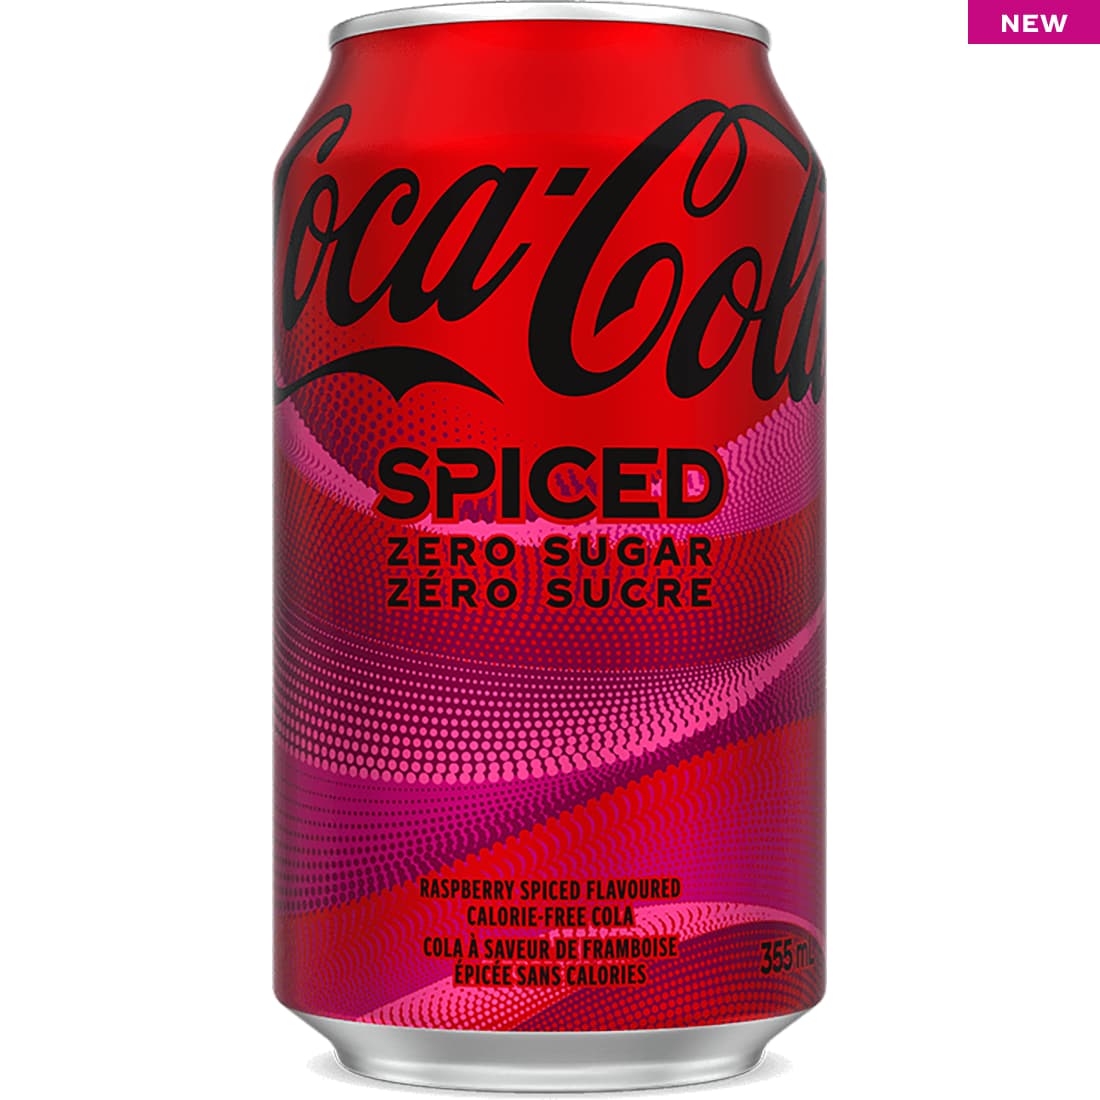 NEW Coca-Cola Spiced Zero Sugar 355 mL can